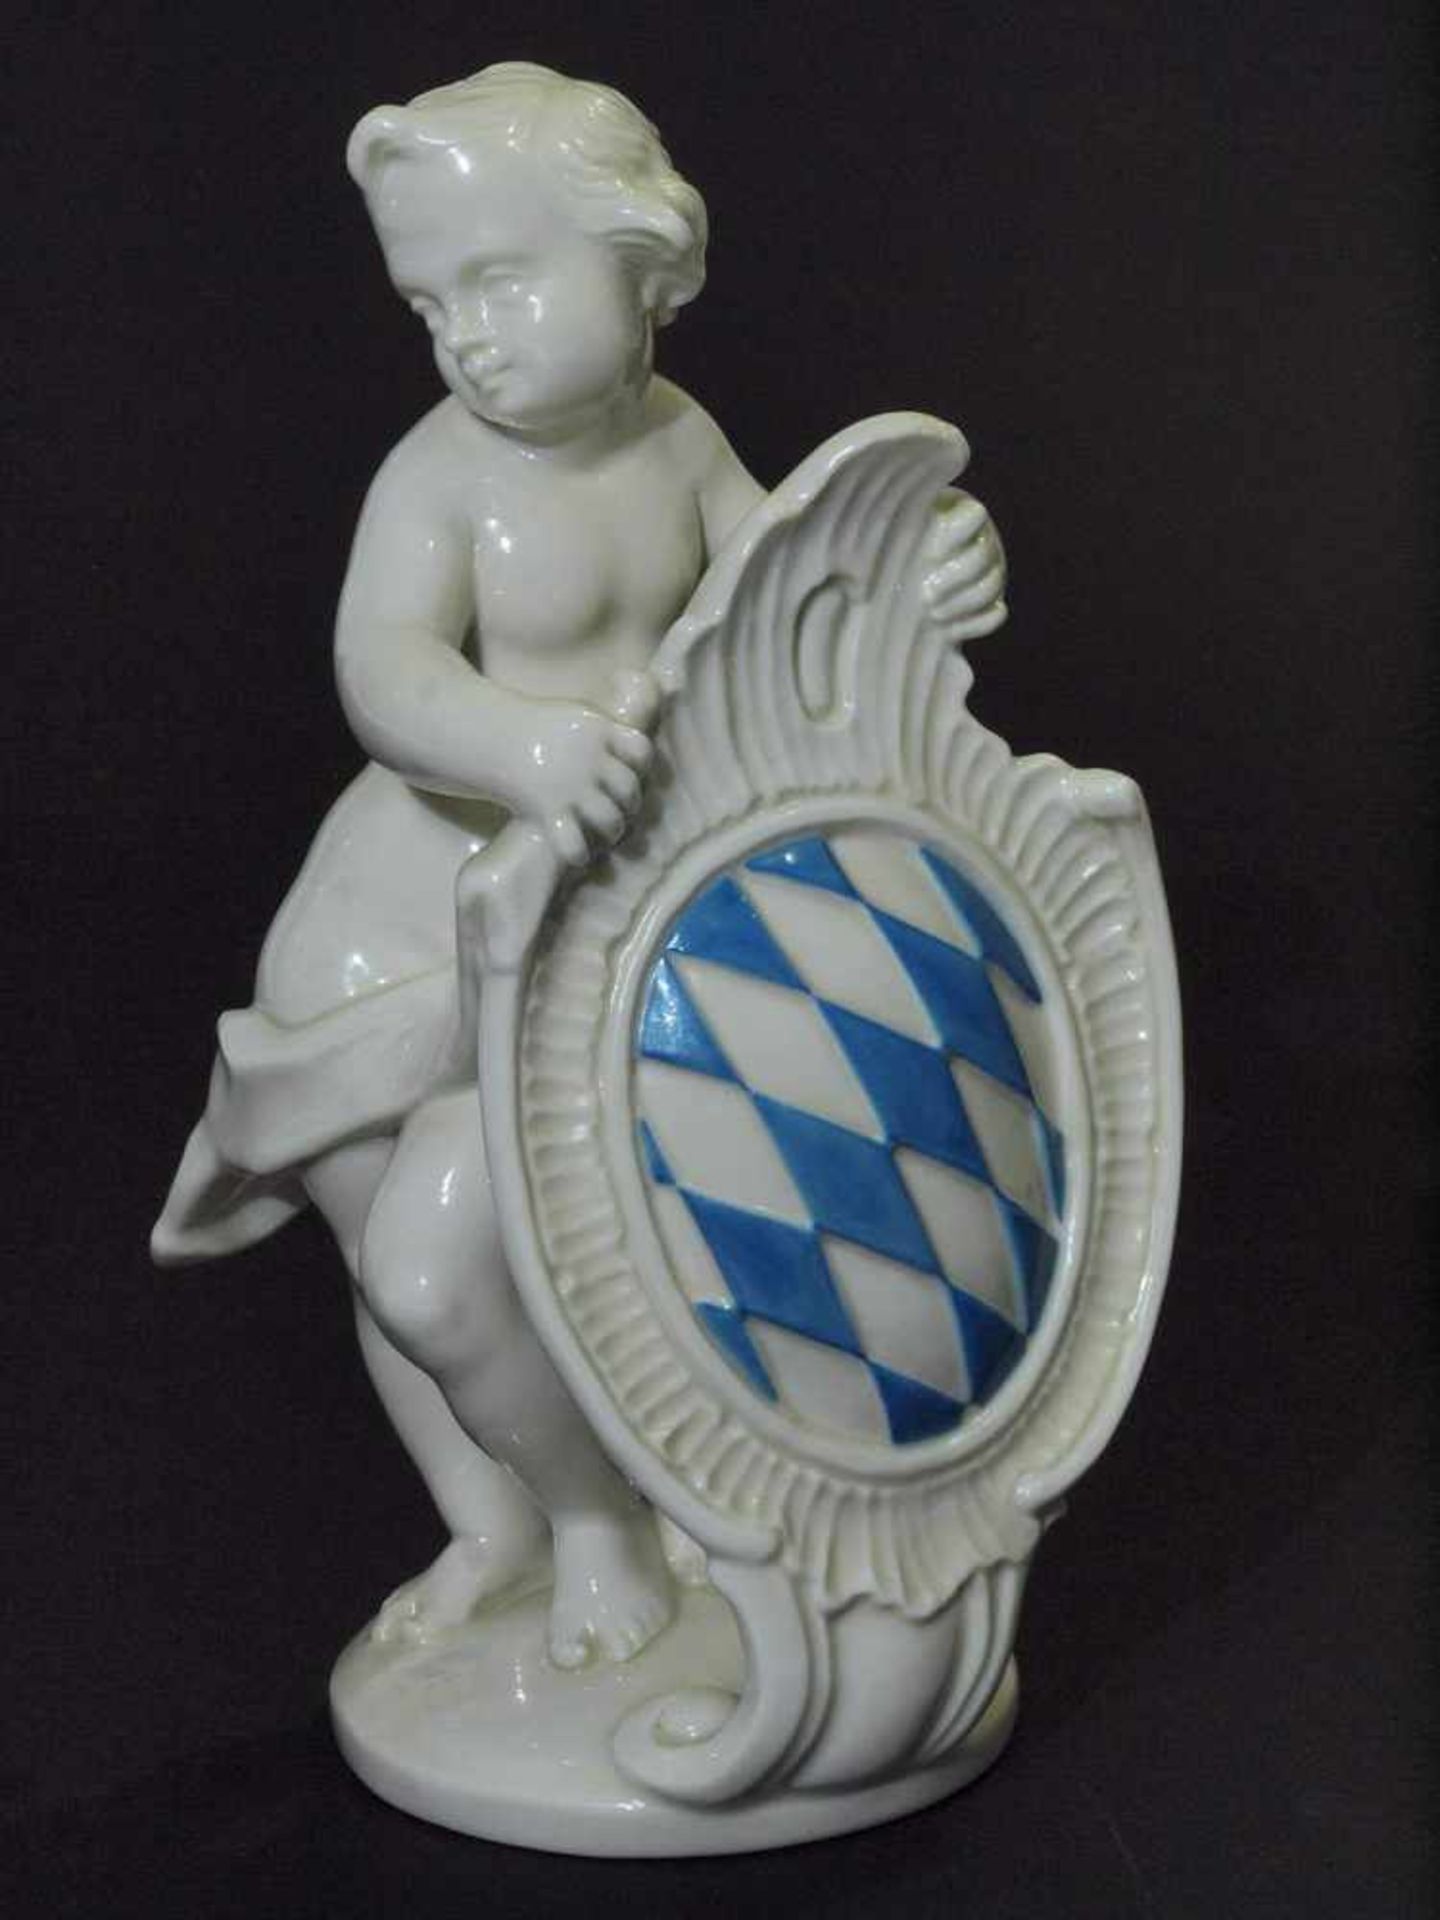 Putto mit bayerischem Wappen. Putto mit bayerischem Wappen. NYMPHENBURG, Marke 1976 - 1997. - Image 2 of 6